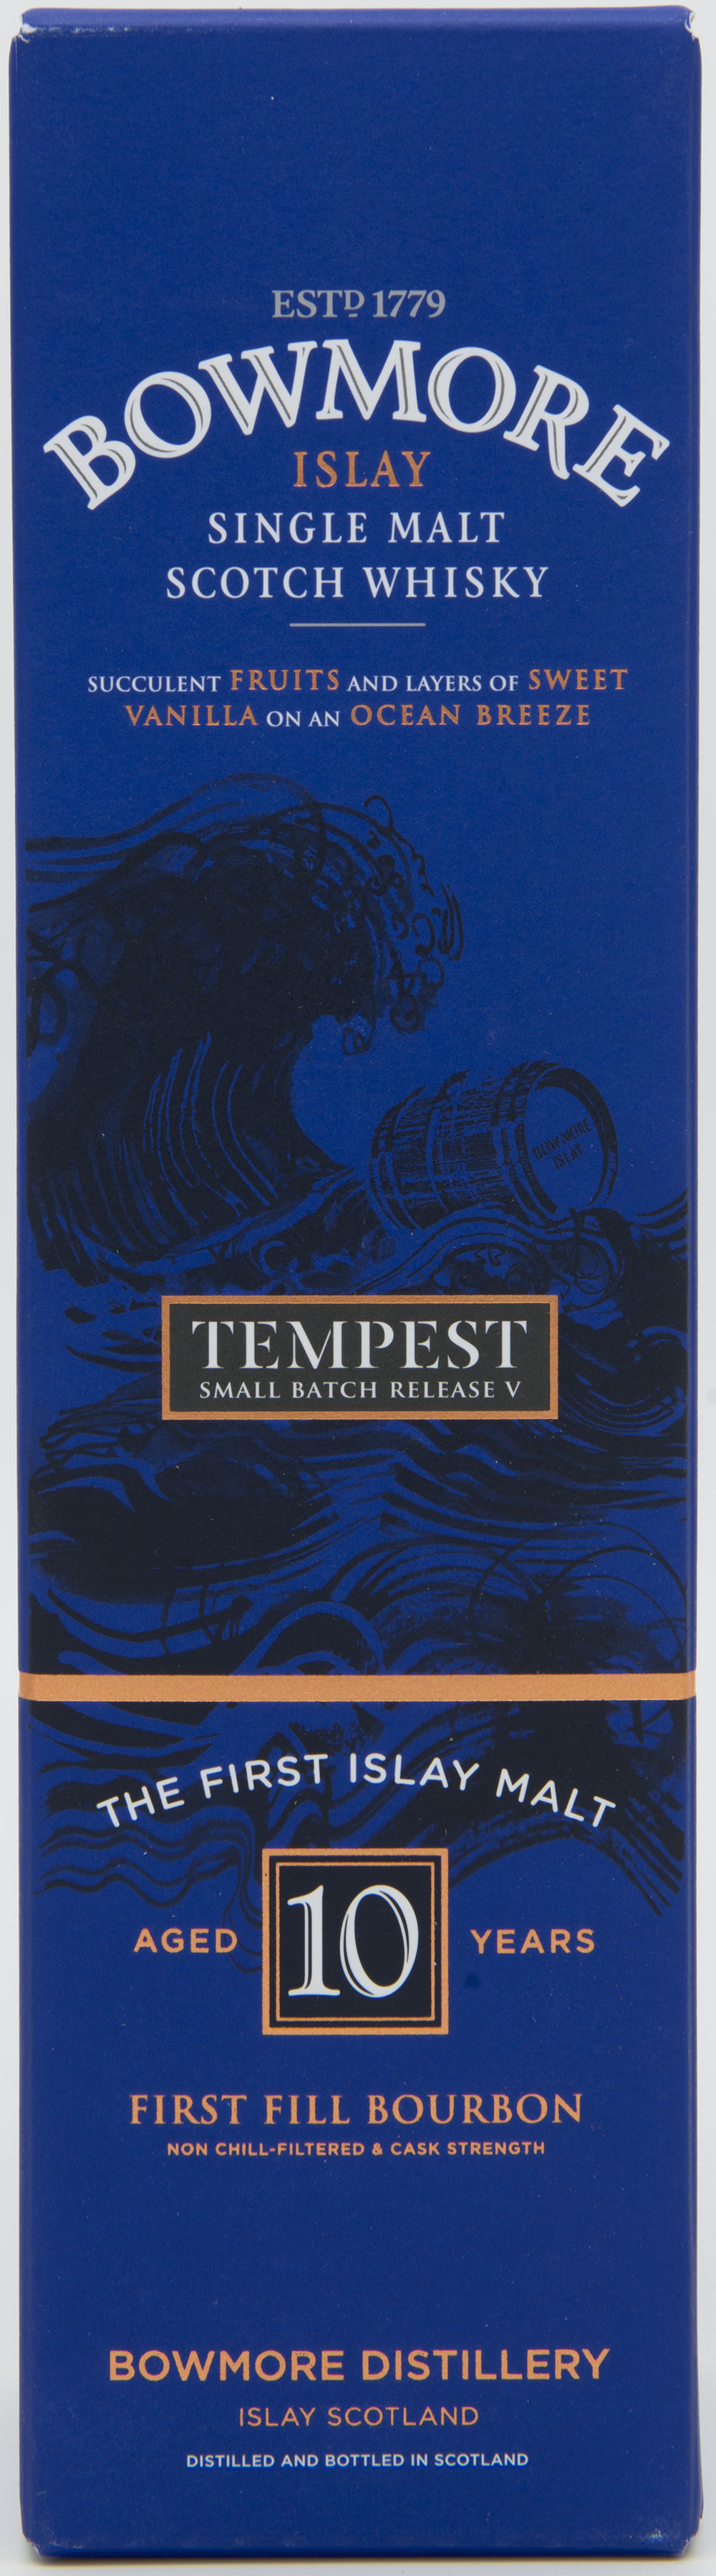 Billede: DSC_6464 Bowmore Tempest batch V - box front.jpg